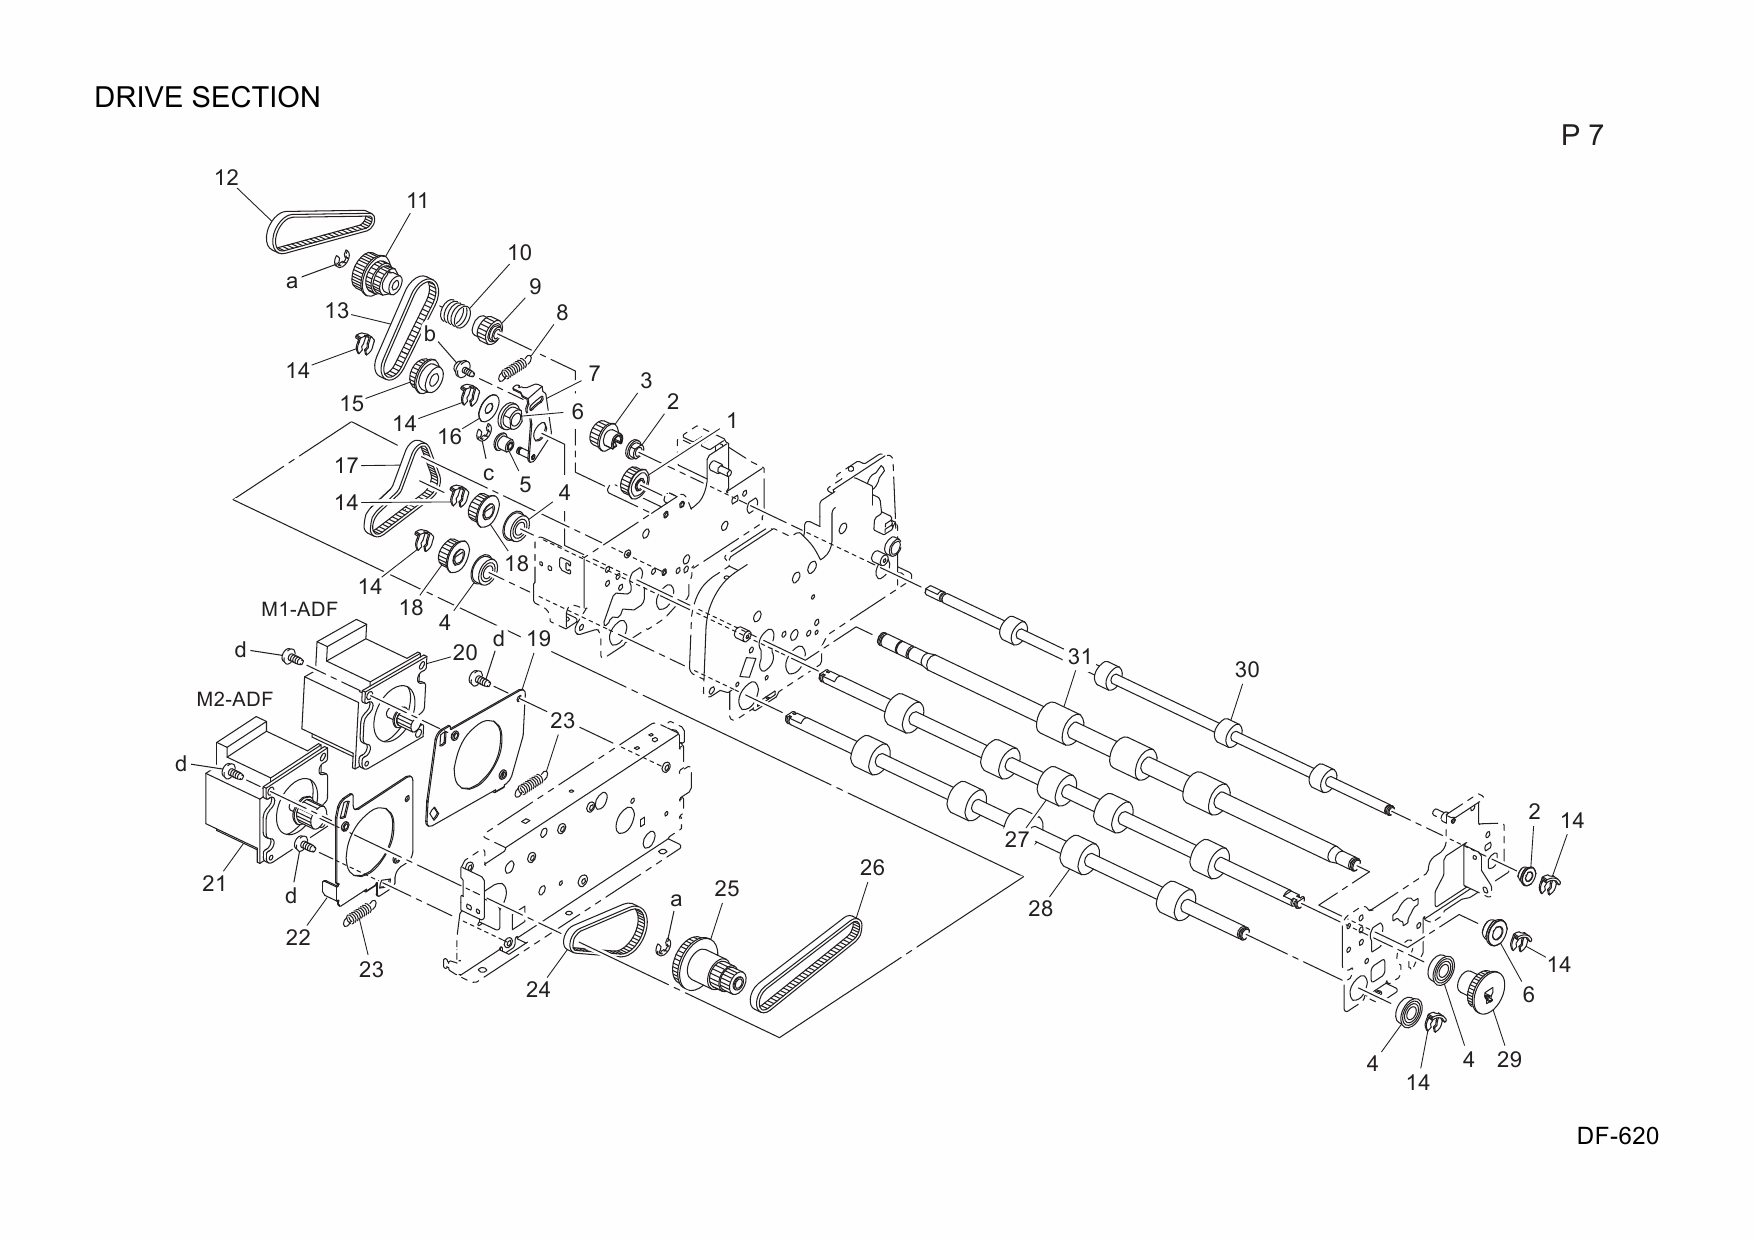 Konica-Minolta Options DF-620 A124 Parts Manual-5